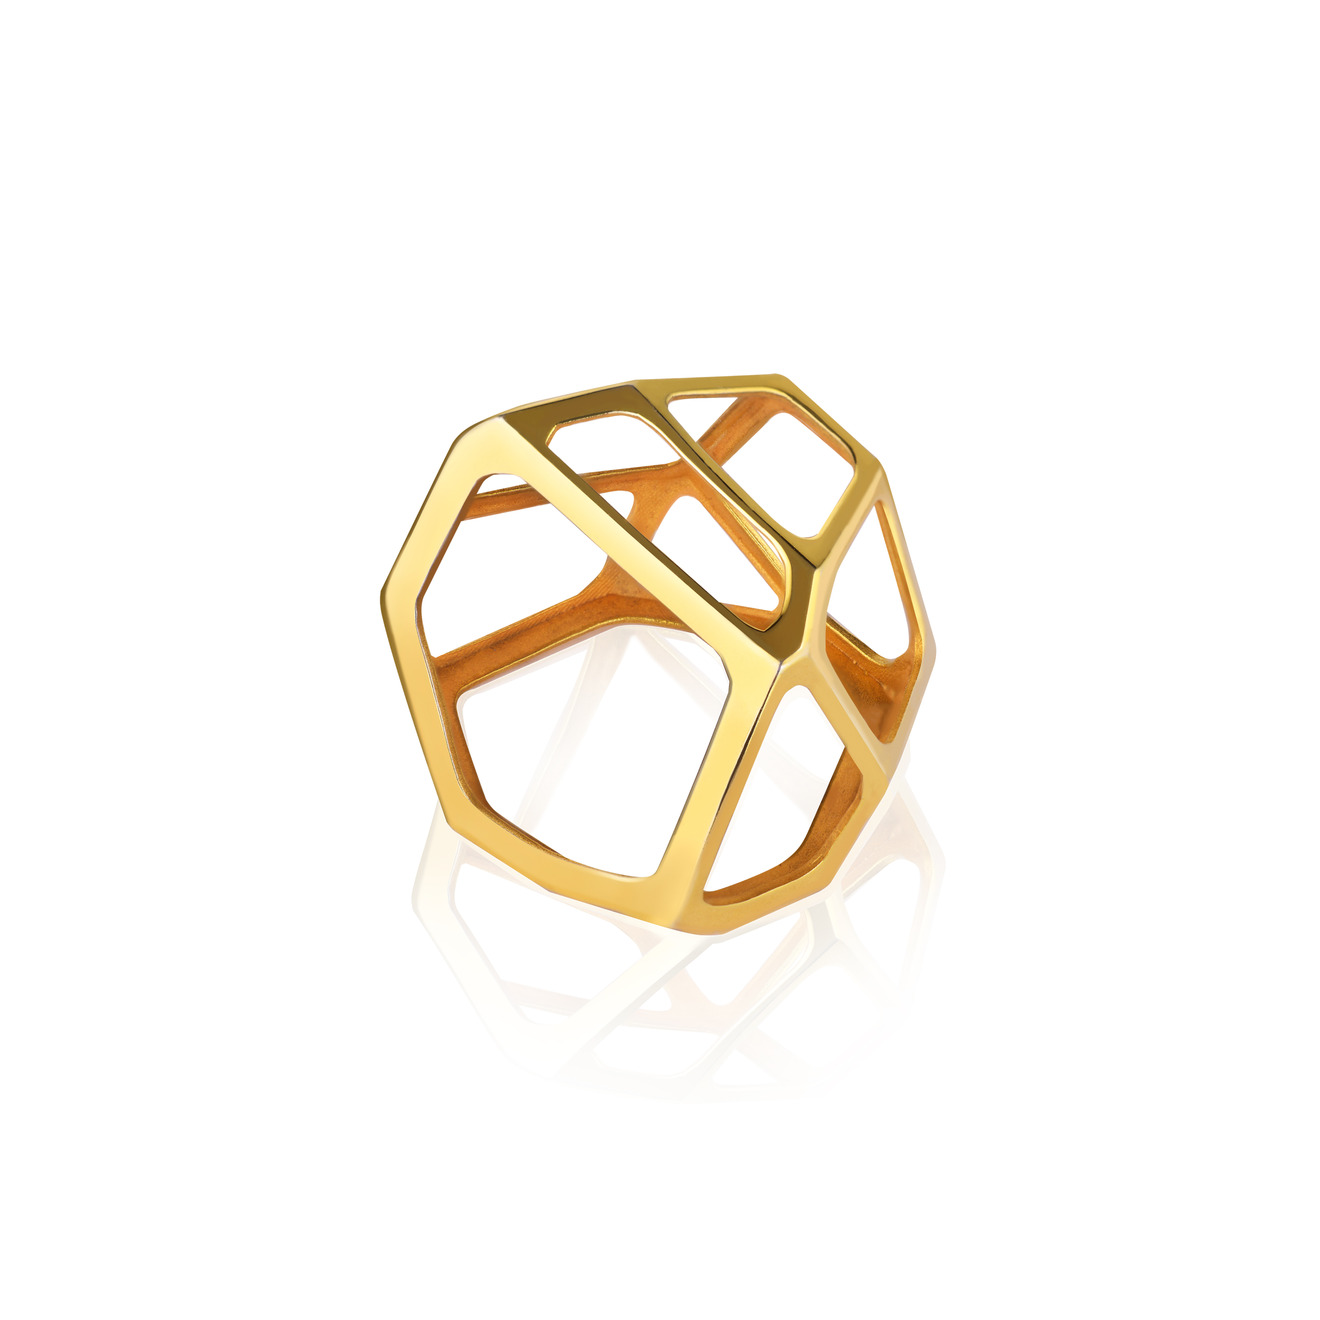 Vertigo Jewellery Lab Позолоченное безразмерное кольцо-подвеска из серебра “CELL MONO” vertigo jewellery lab фаланговое кольцо из серебра essentials покрытое розовым золотом